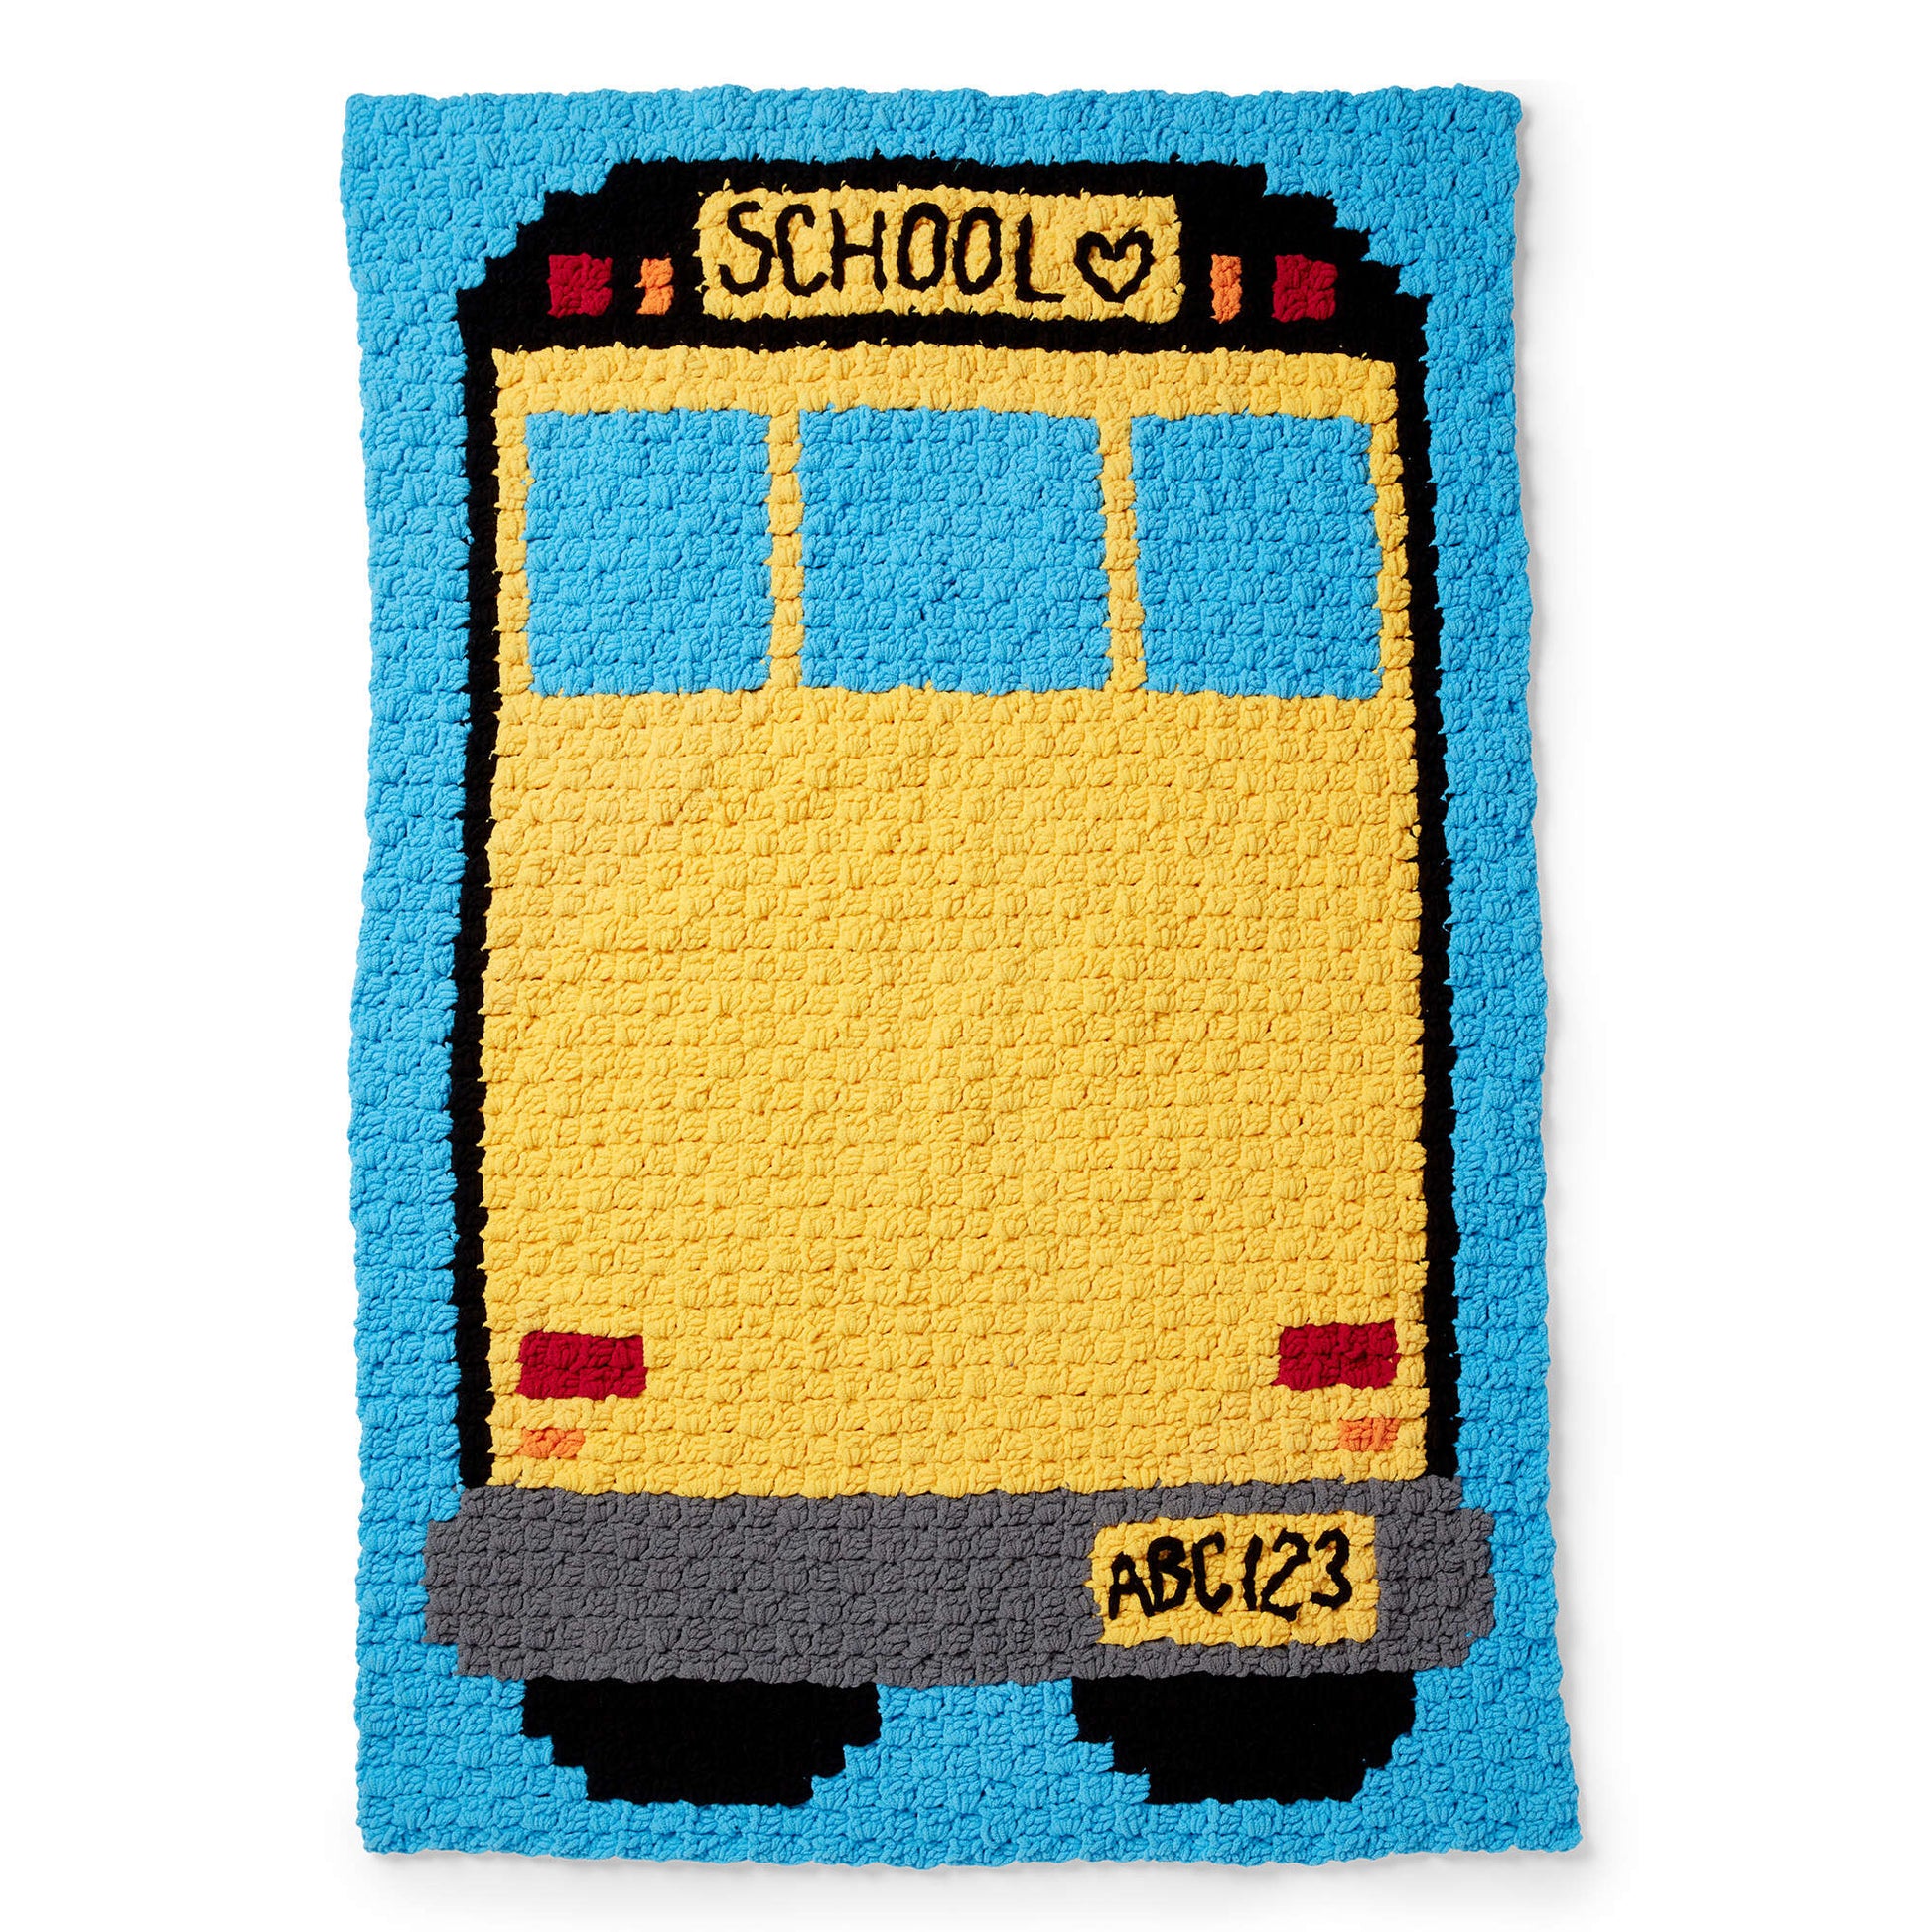 Bernat Corner To Corner Crochet School Bus Blanket Crochet Blanket made in Bernat Blanket yarn